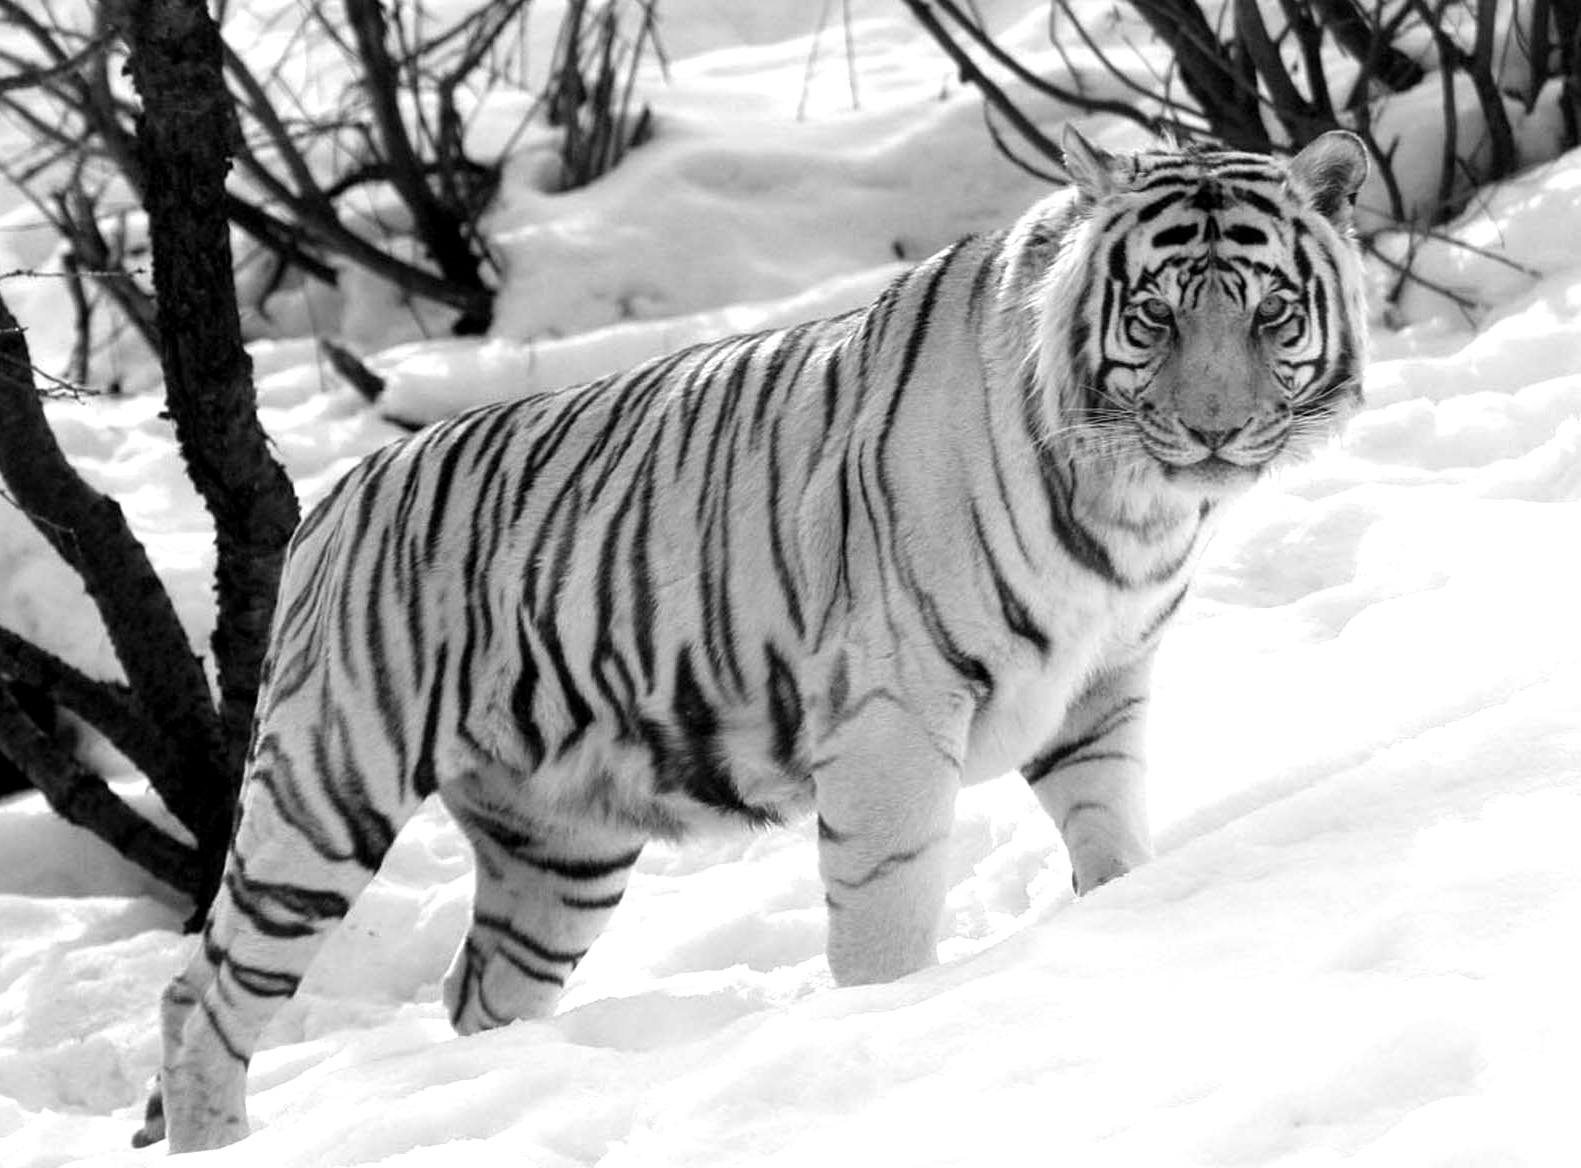 Gambar Harimau Terbaru Kumpulan Nah Itulah Sedikit Koleksi Gallery Bisa